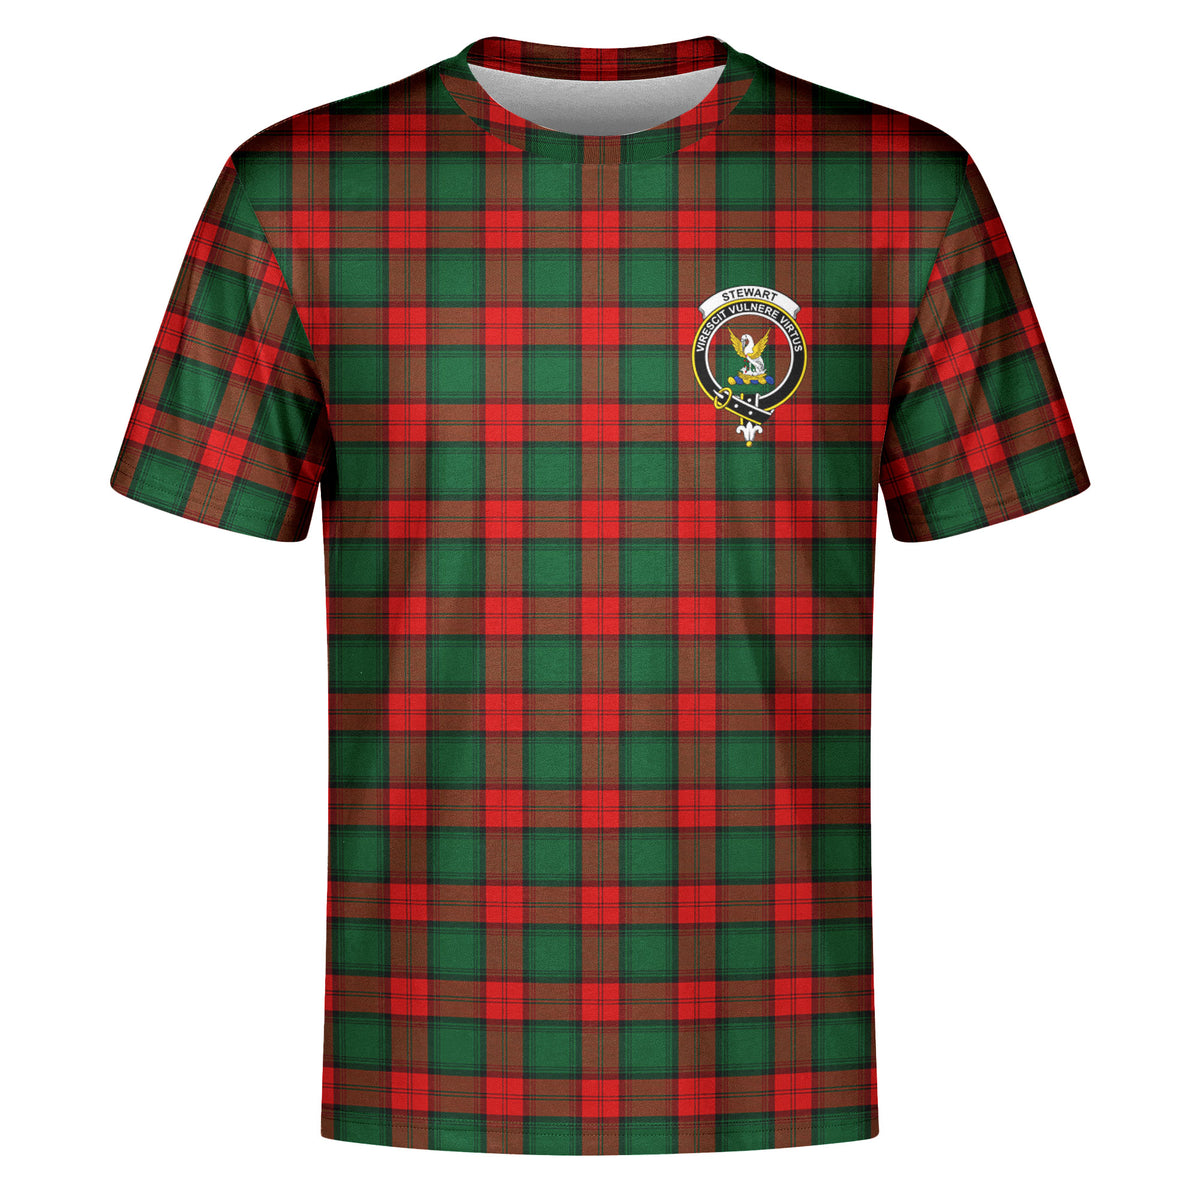 Stewart Atholl Modern Tartan Crest T-shirt